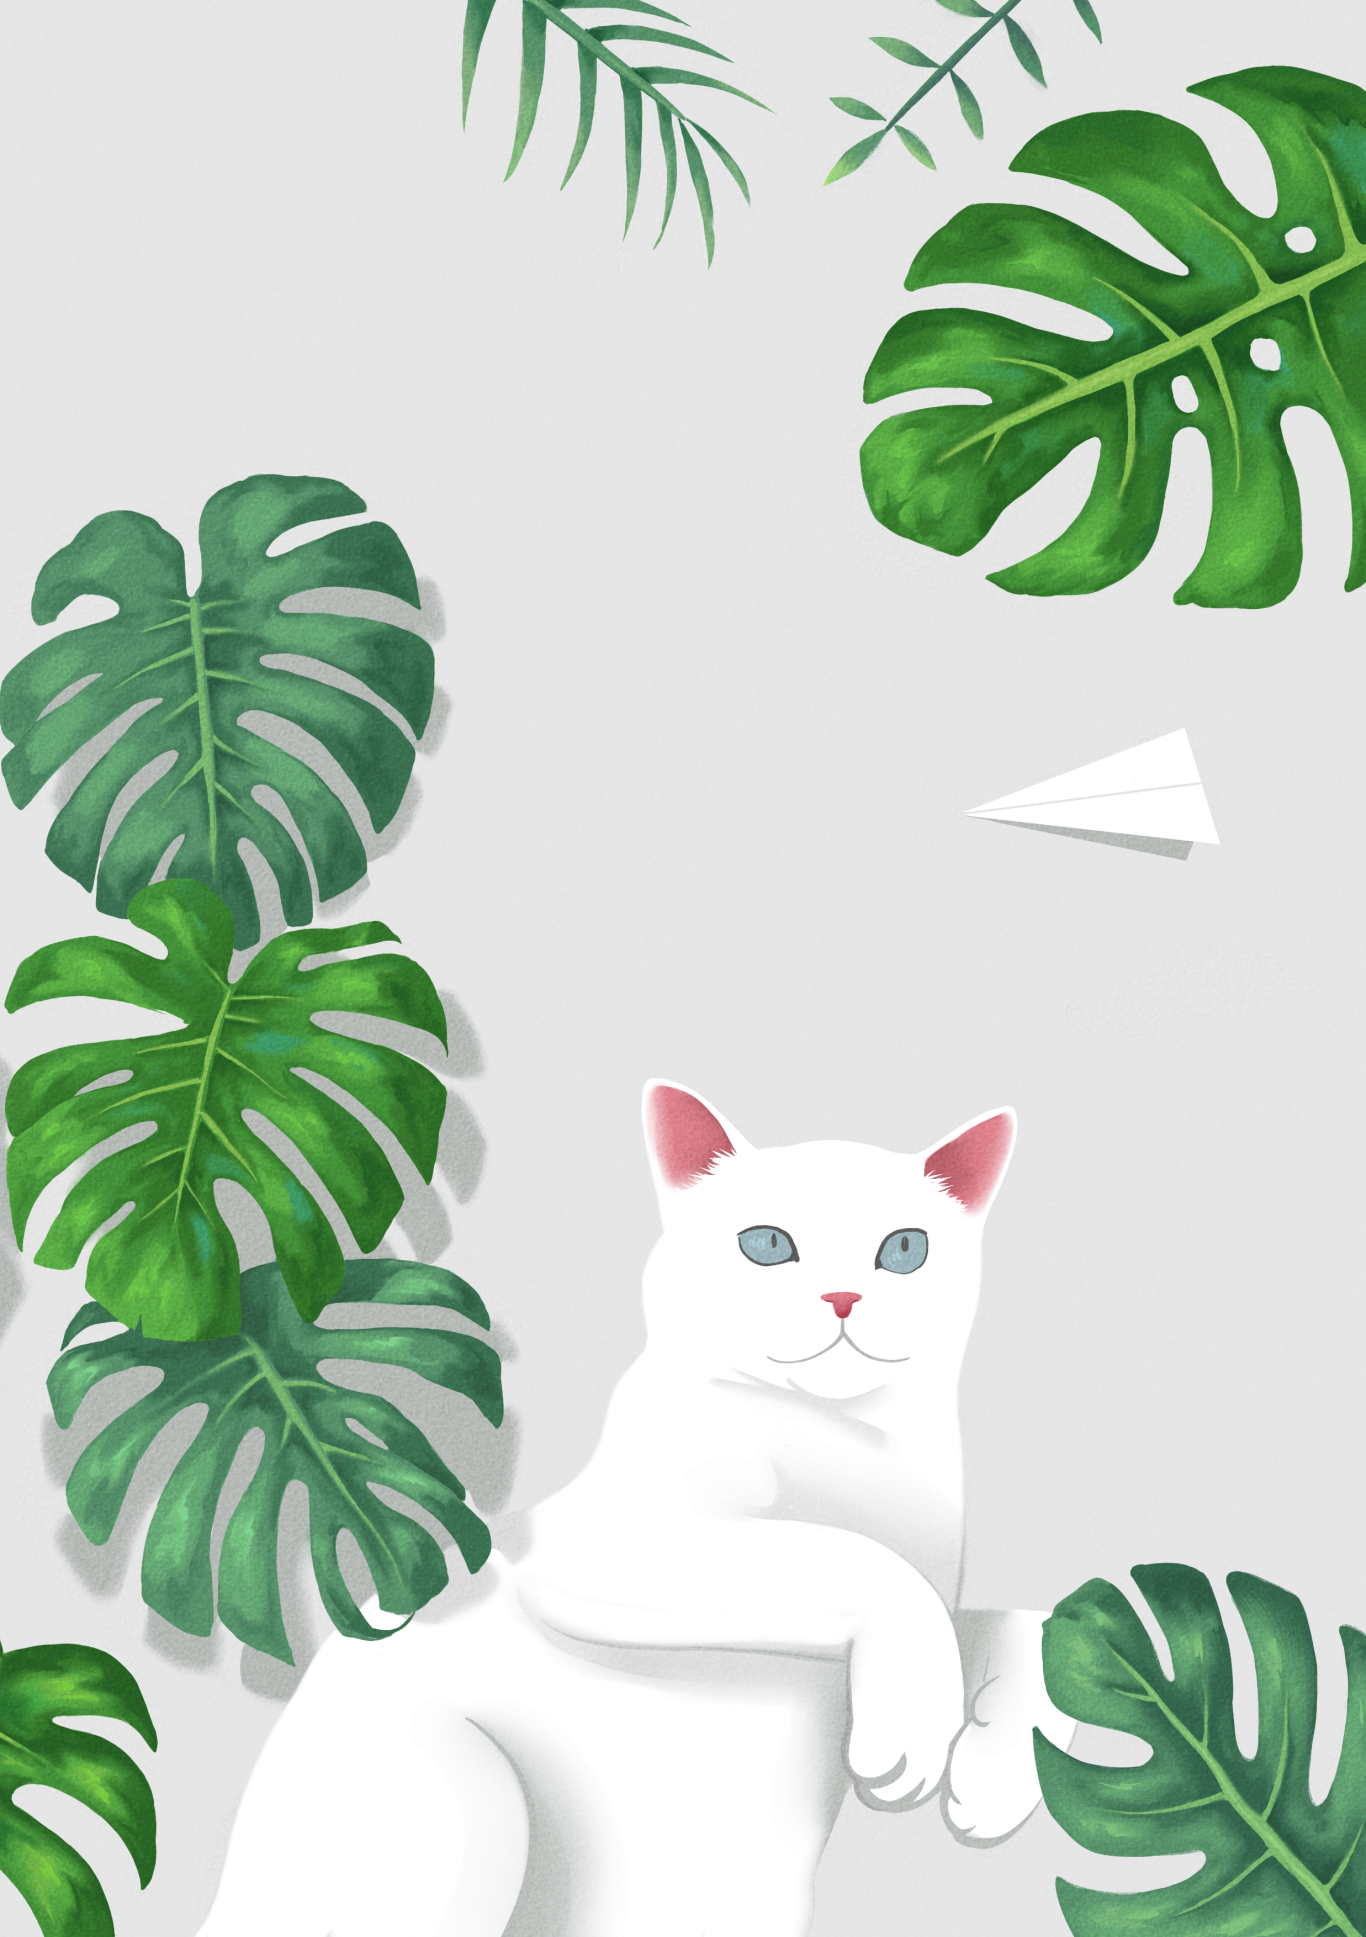 美式版画风！9 张复古猫猫插画 - 优优教程网 - 自学就上优优网 - UiiiUiii.com